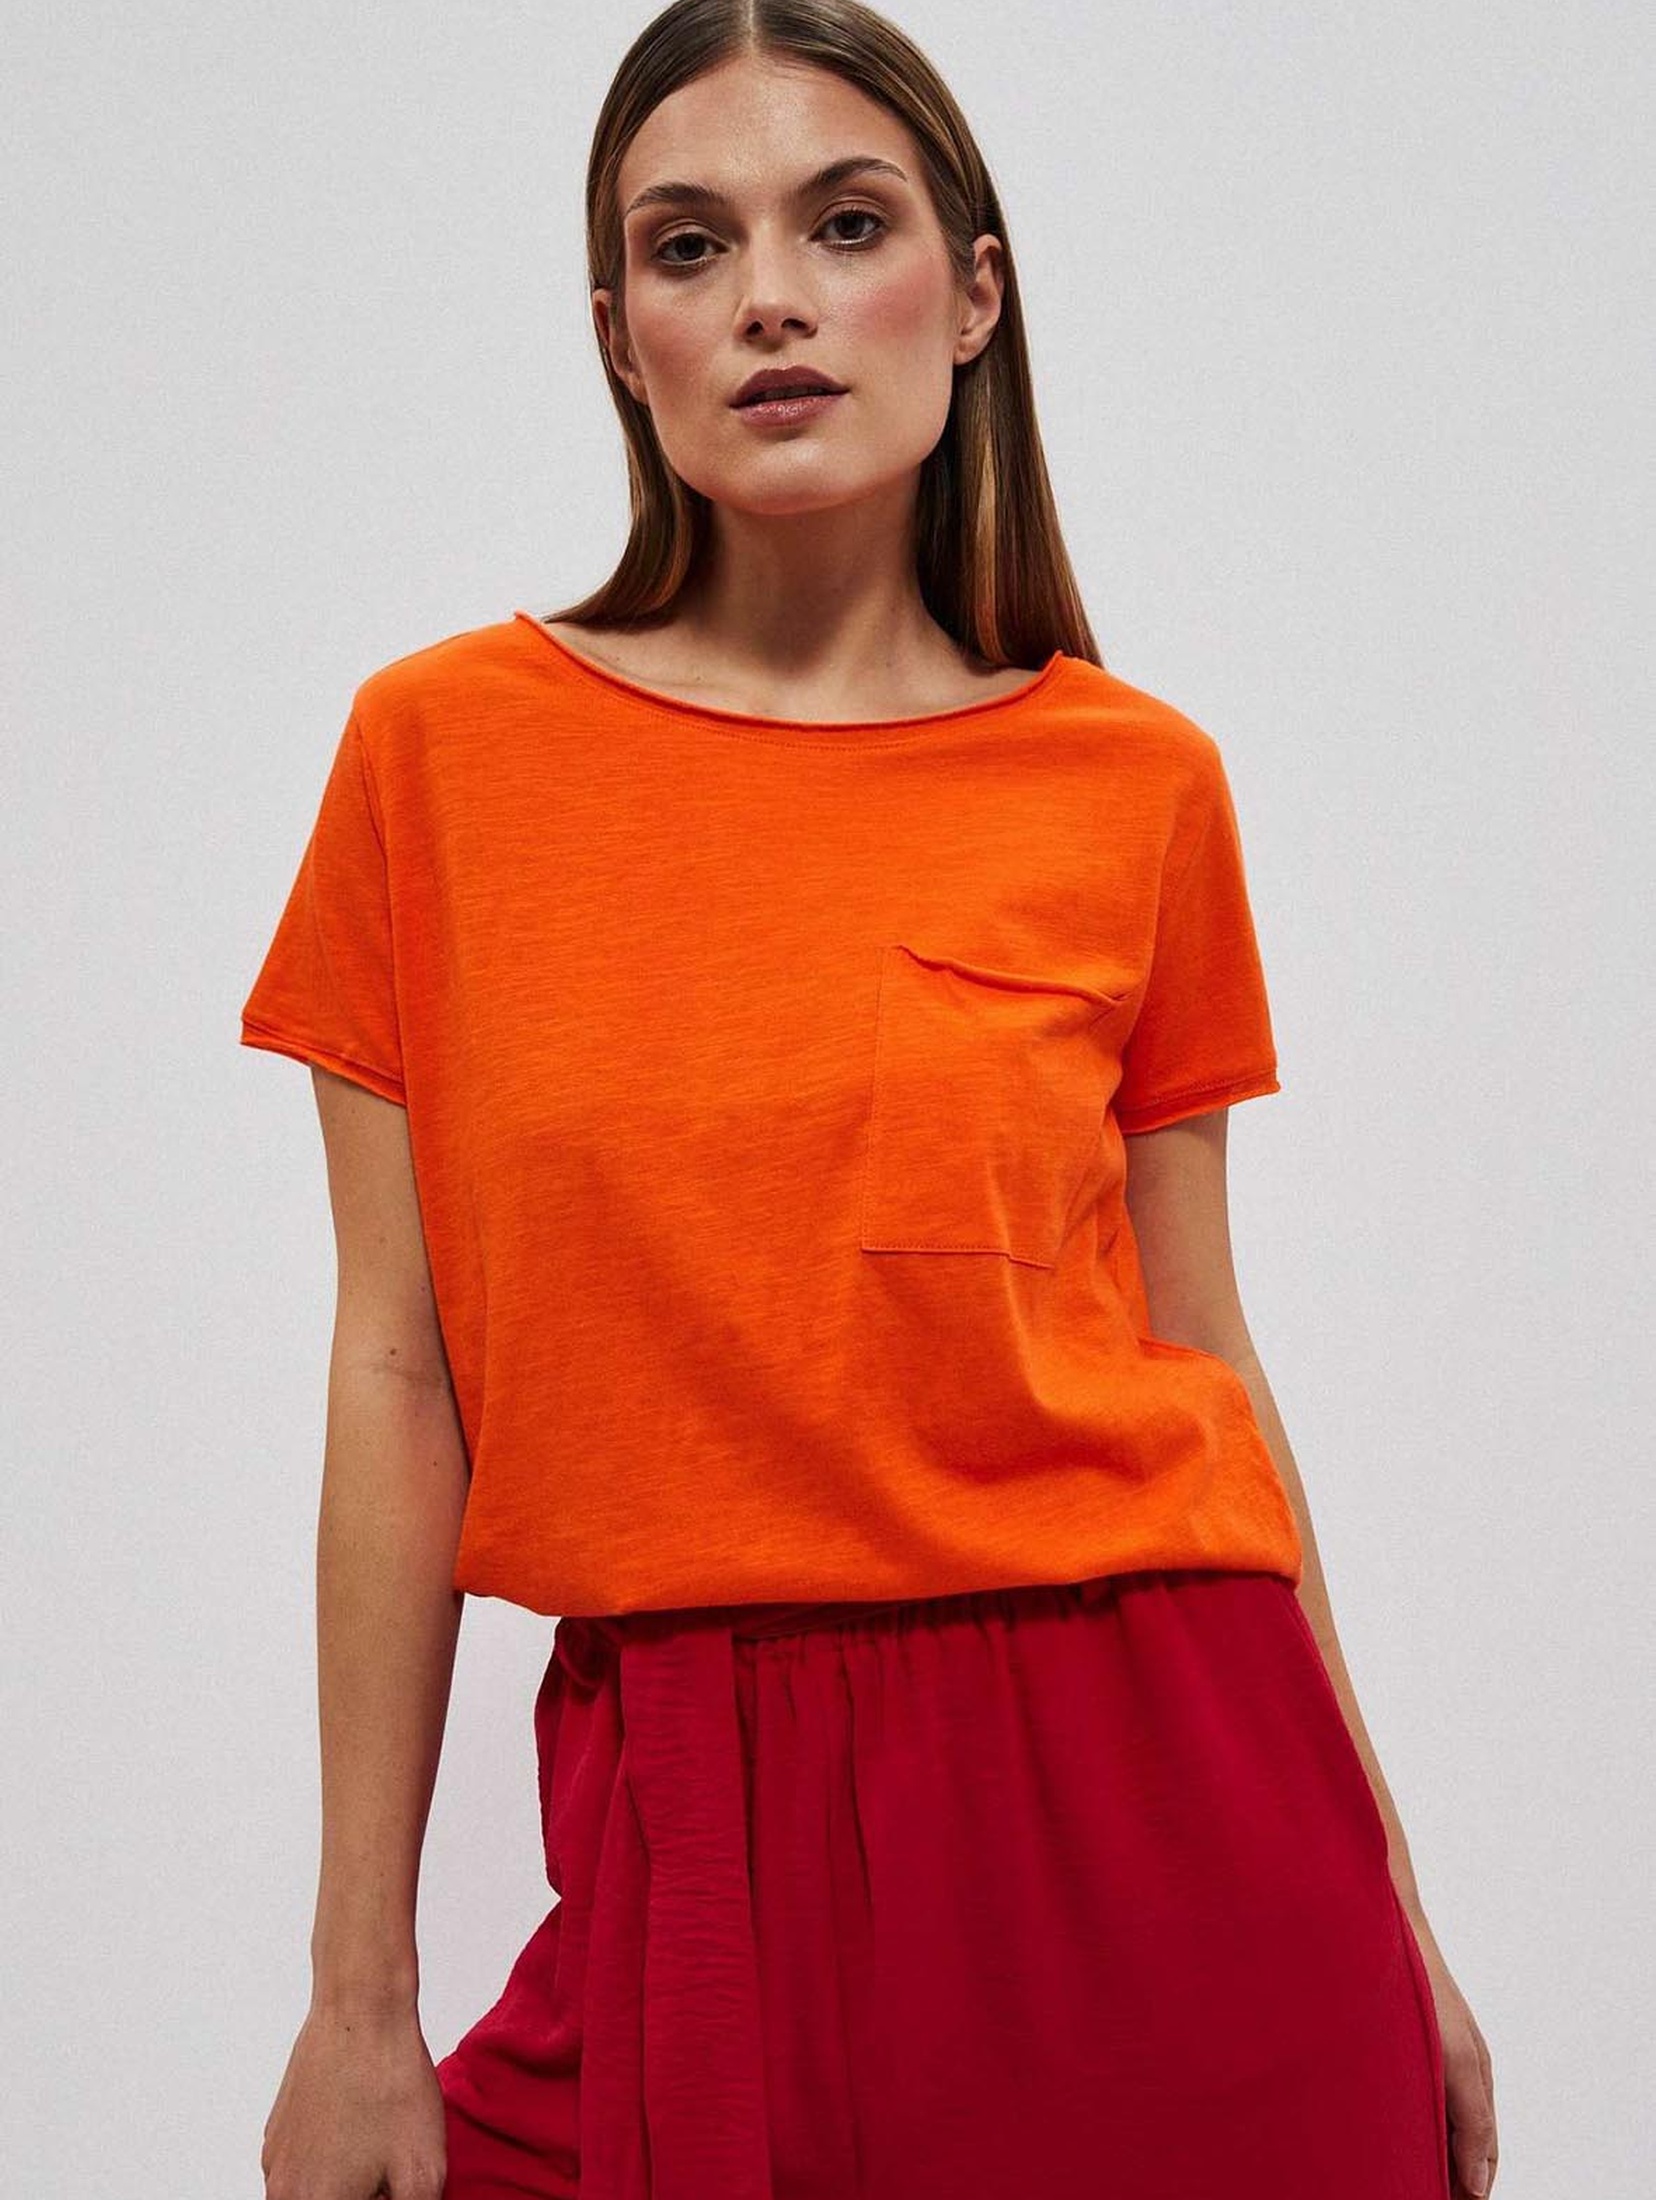 Bawełniany pomarańczowy t-shirt damski z kieszonką